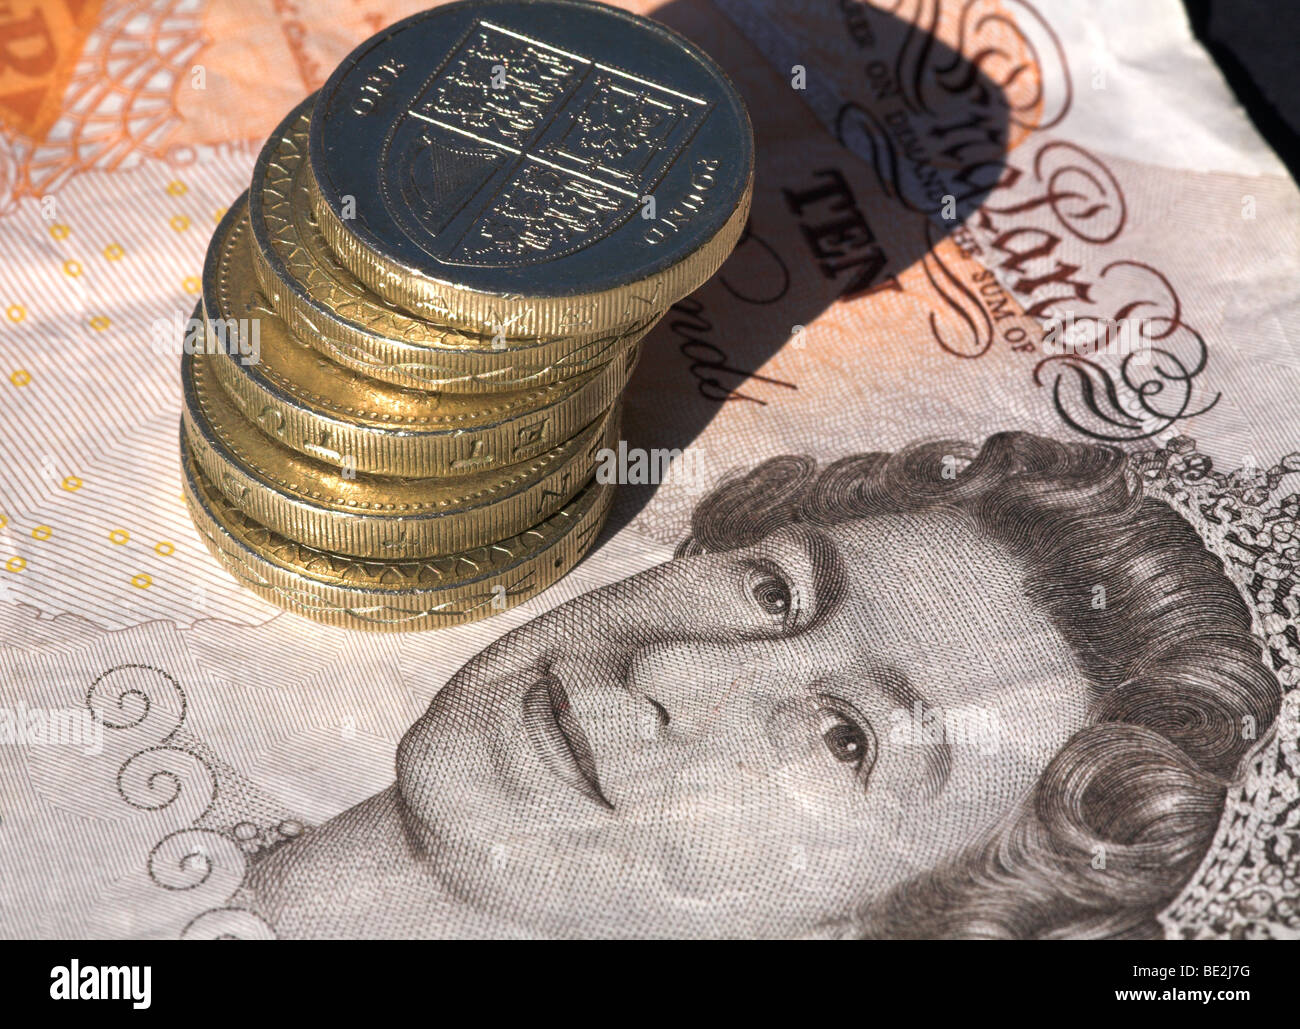 Ten pound note with pound coins Stock Photo